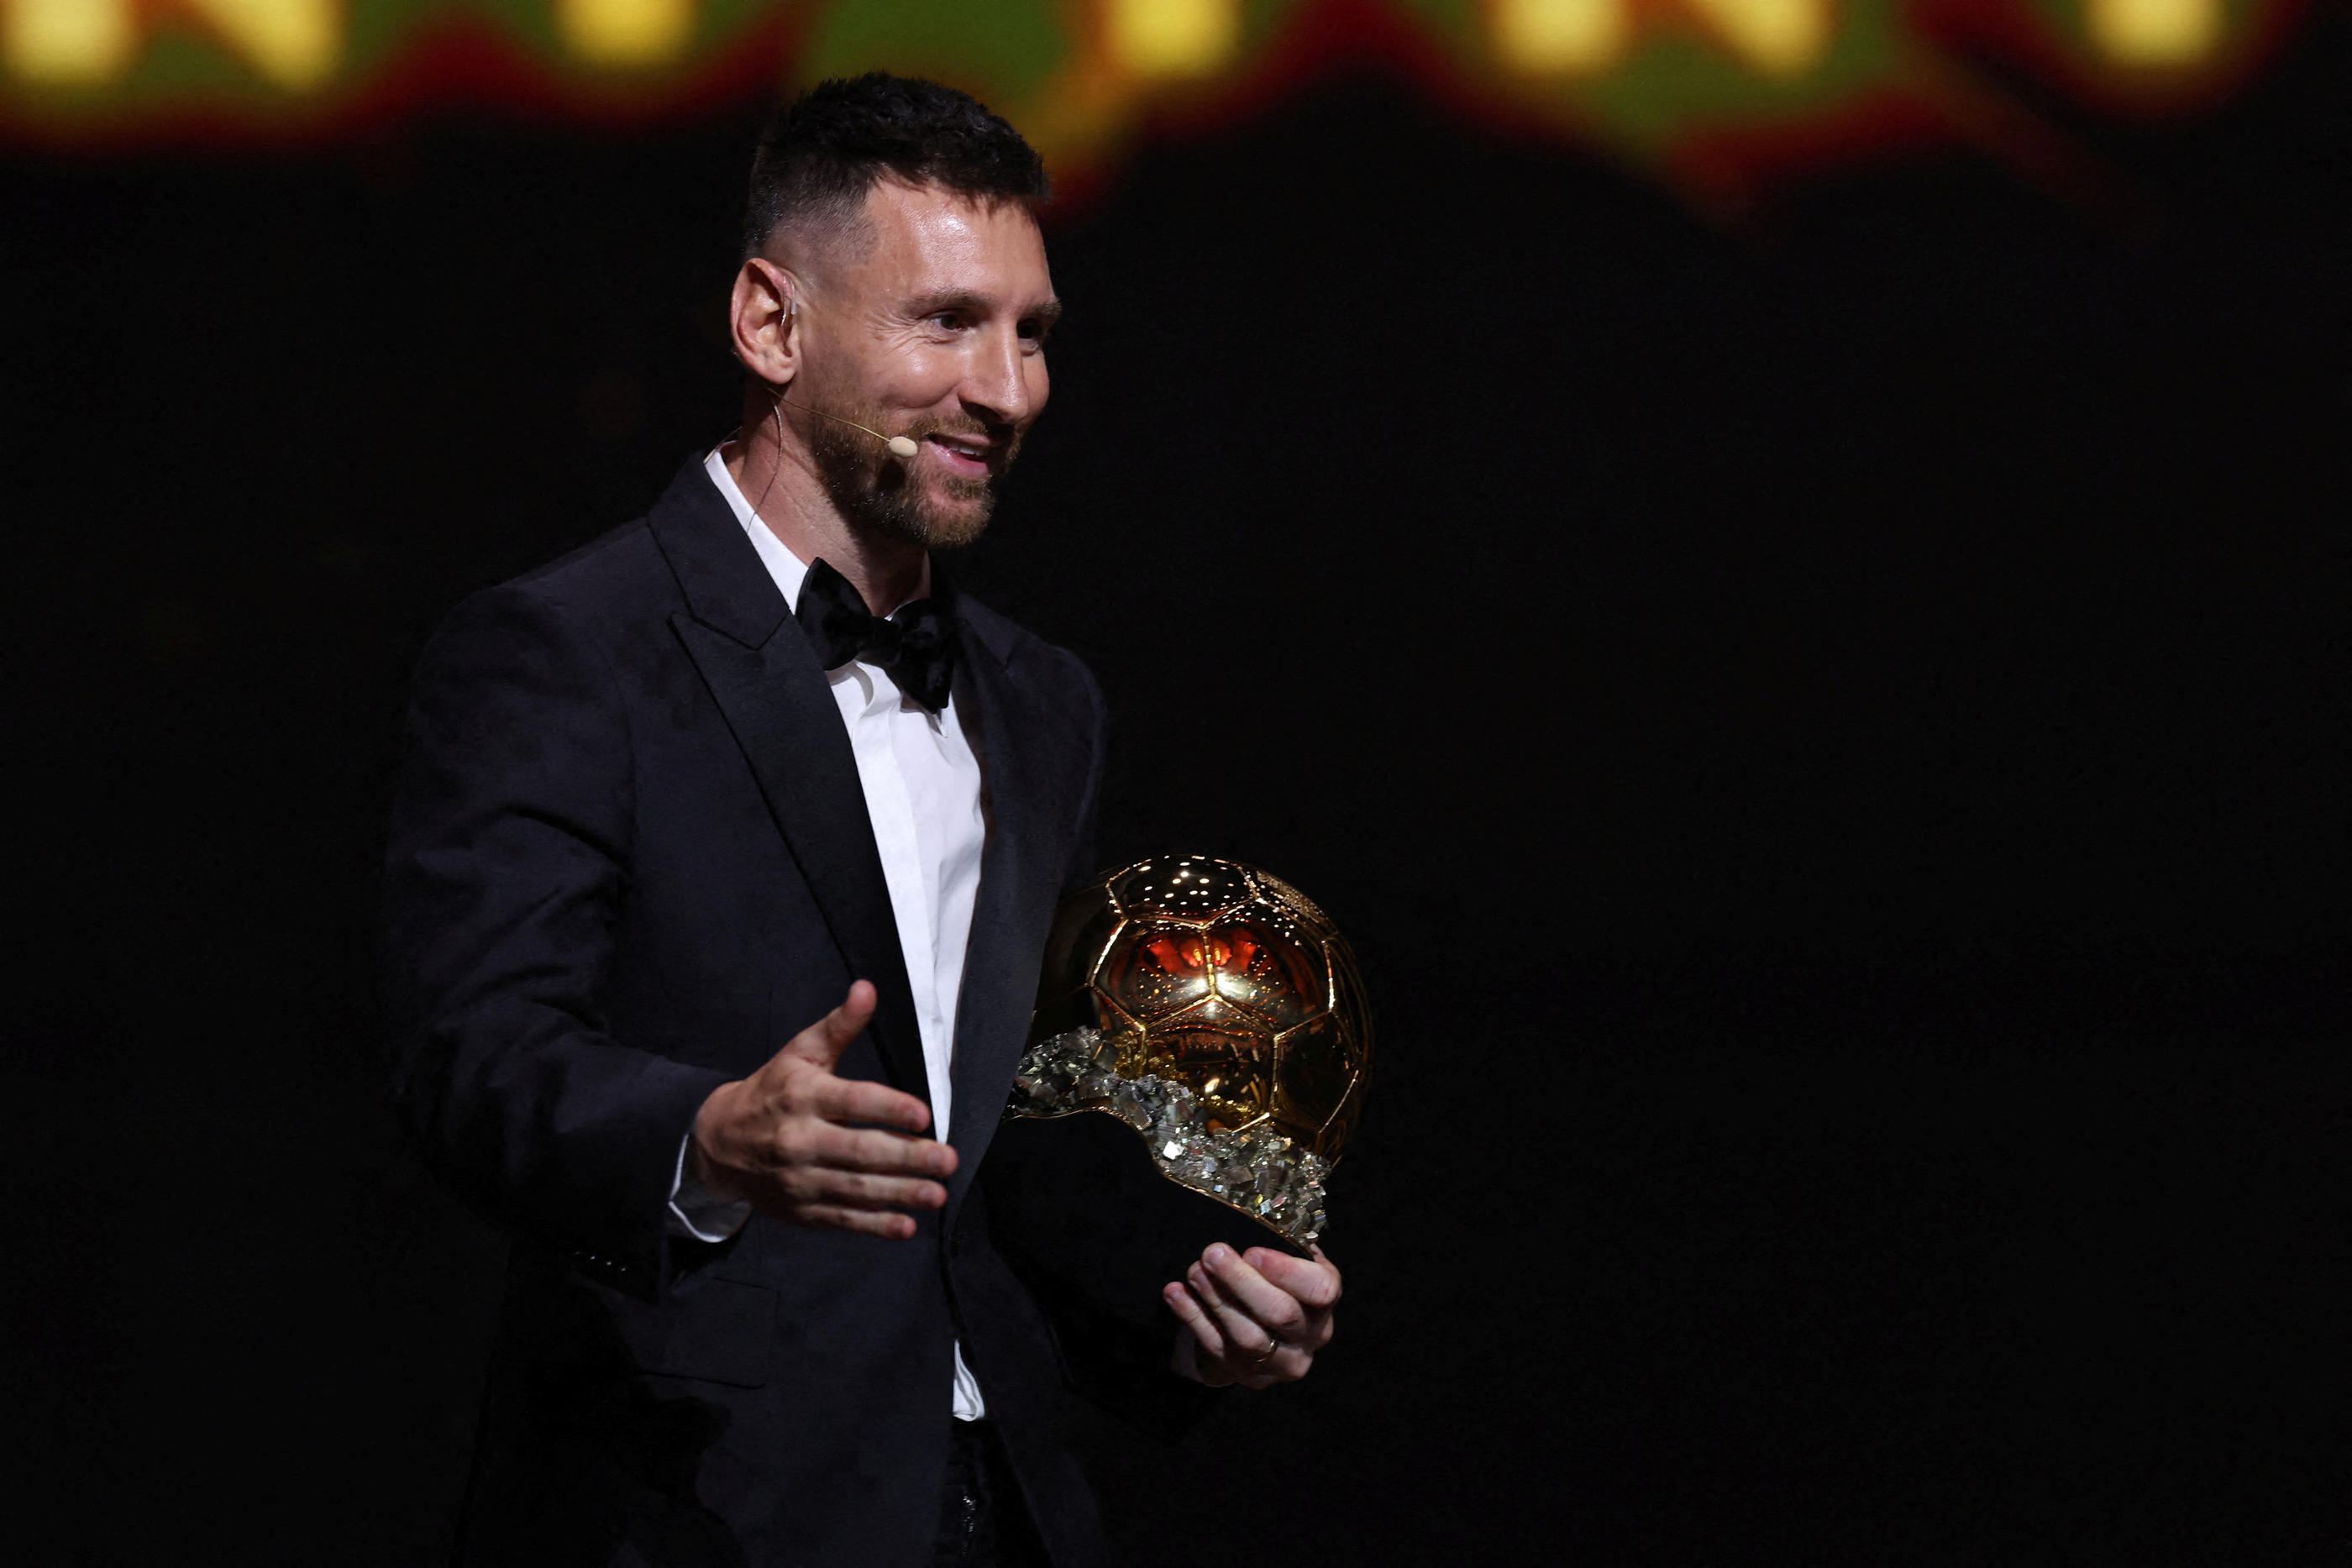 Lundi soir, Lionel Messi a remporté à Paris son 8e Ballon d'or en dominant les votes. REUTERS/Stephanie Lecocq